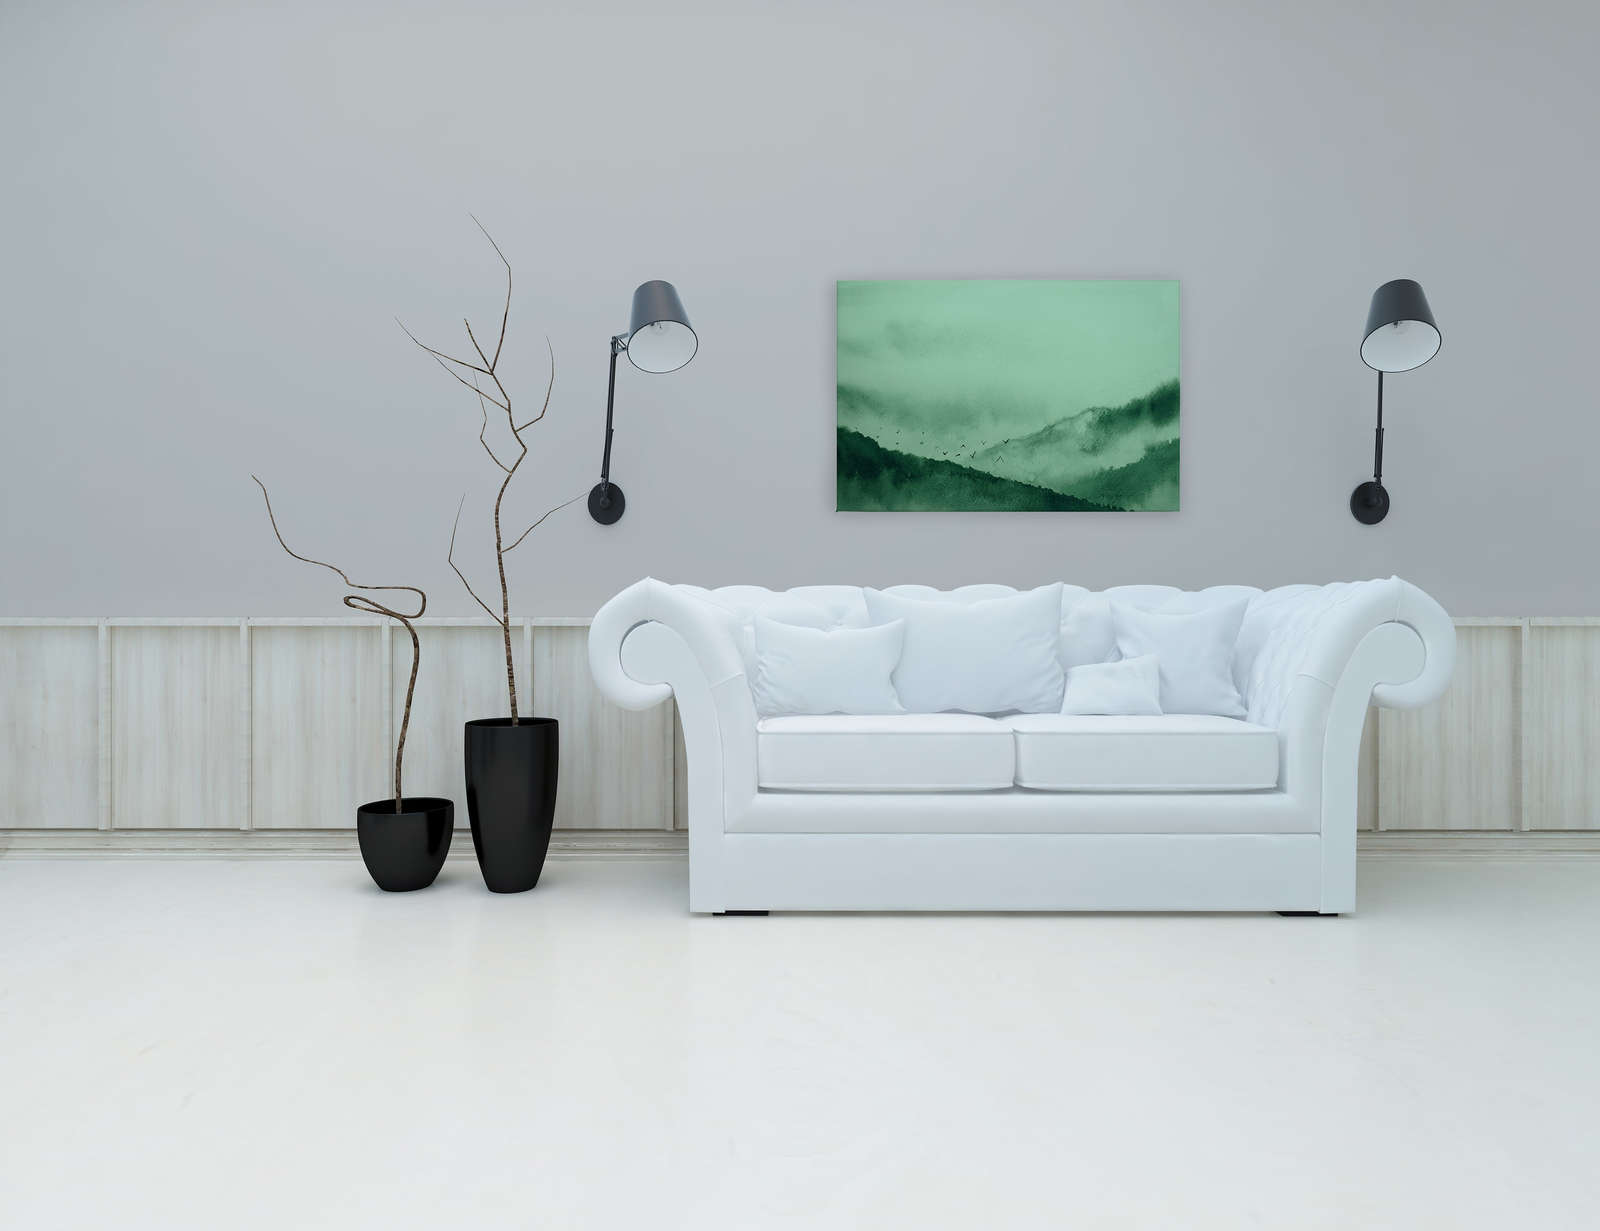             Lienzo con paisaje de niebla en estilo pintura | verde, negro - 0,90 m x 0,60 m
        